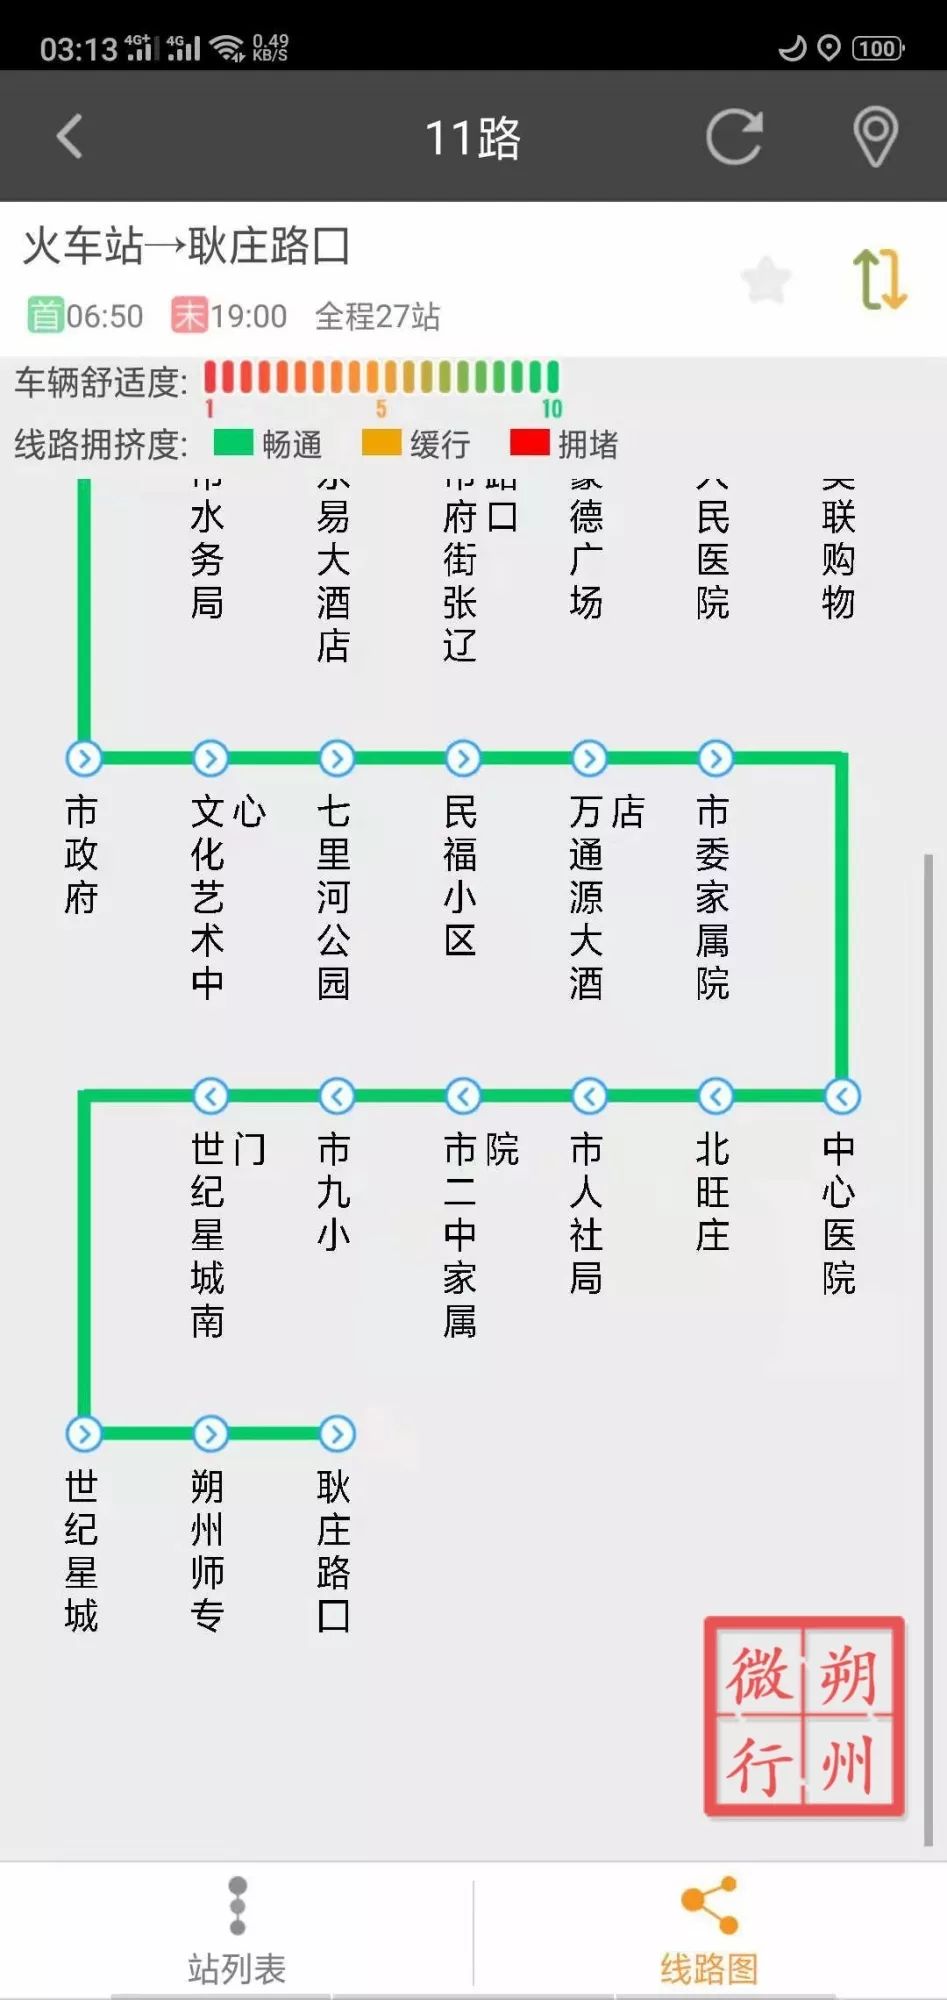 朔州公交车路线图17路图片